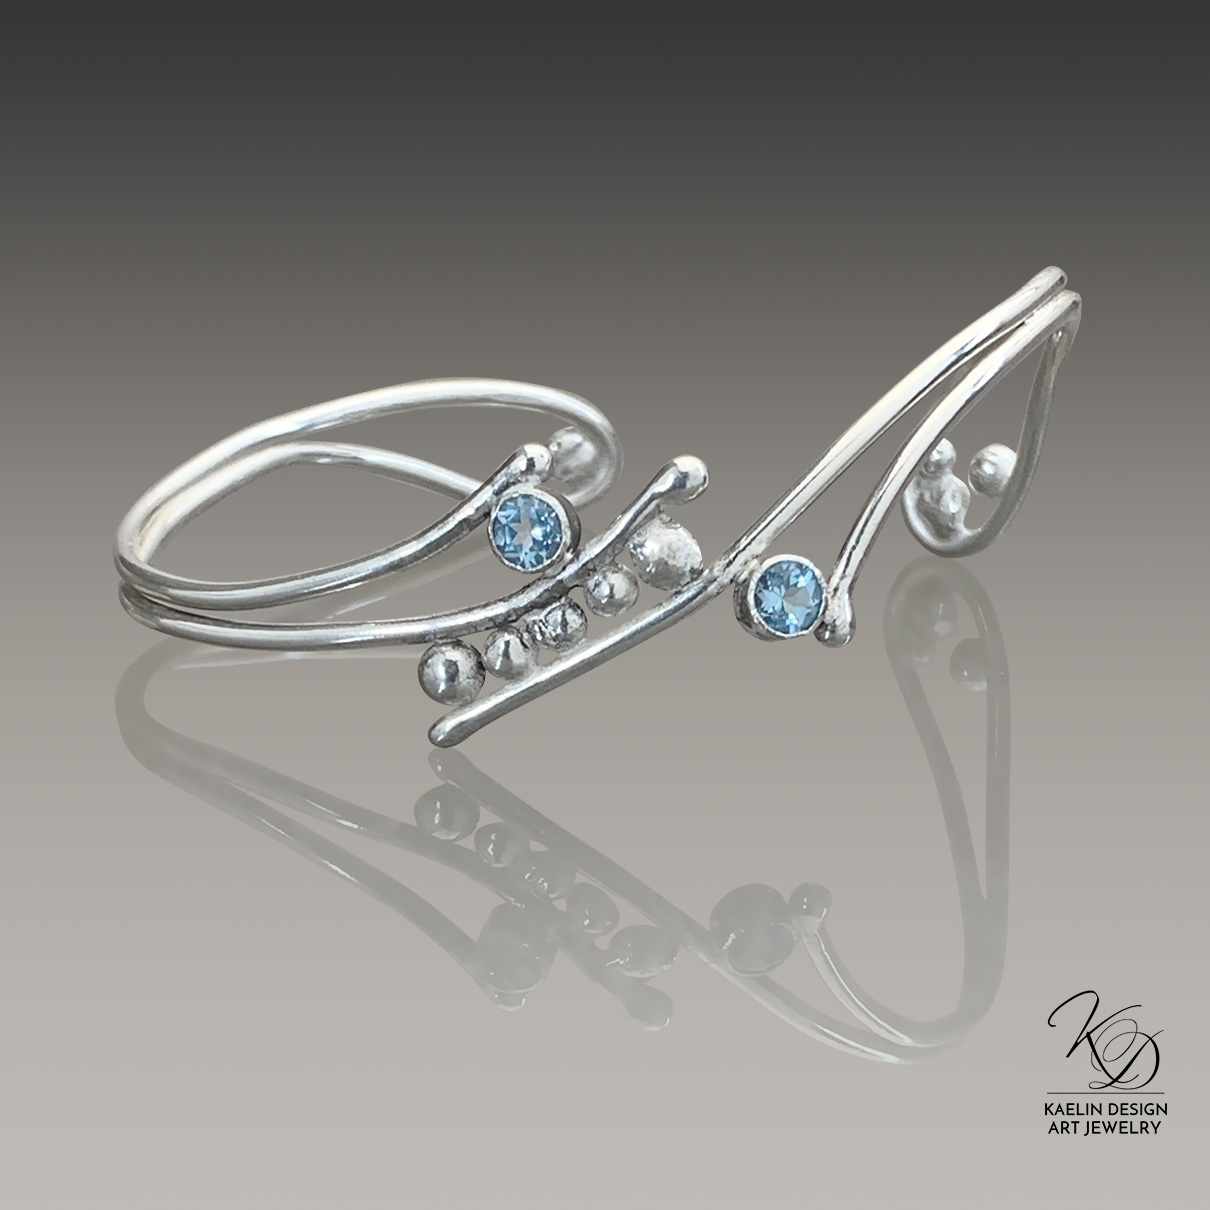 Topaz Foam Ocean Inspired Sterling Silver Hand Forged Art Jewelry Cuff Bracelet by Kaelin Design